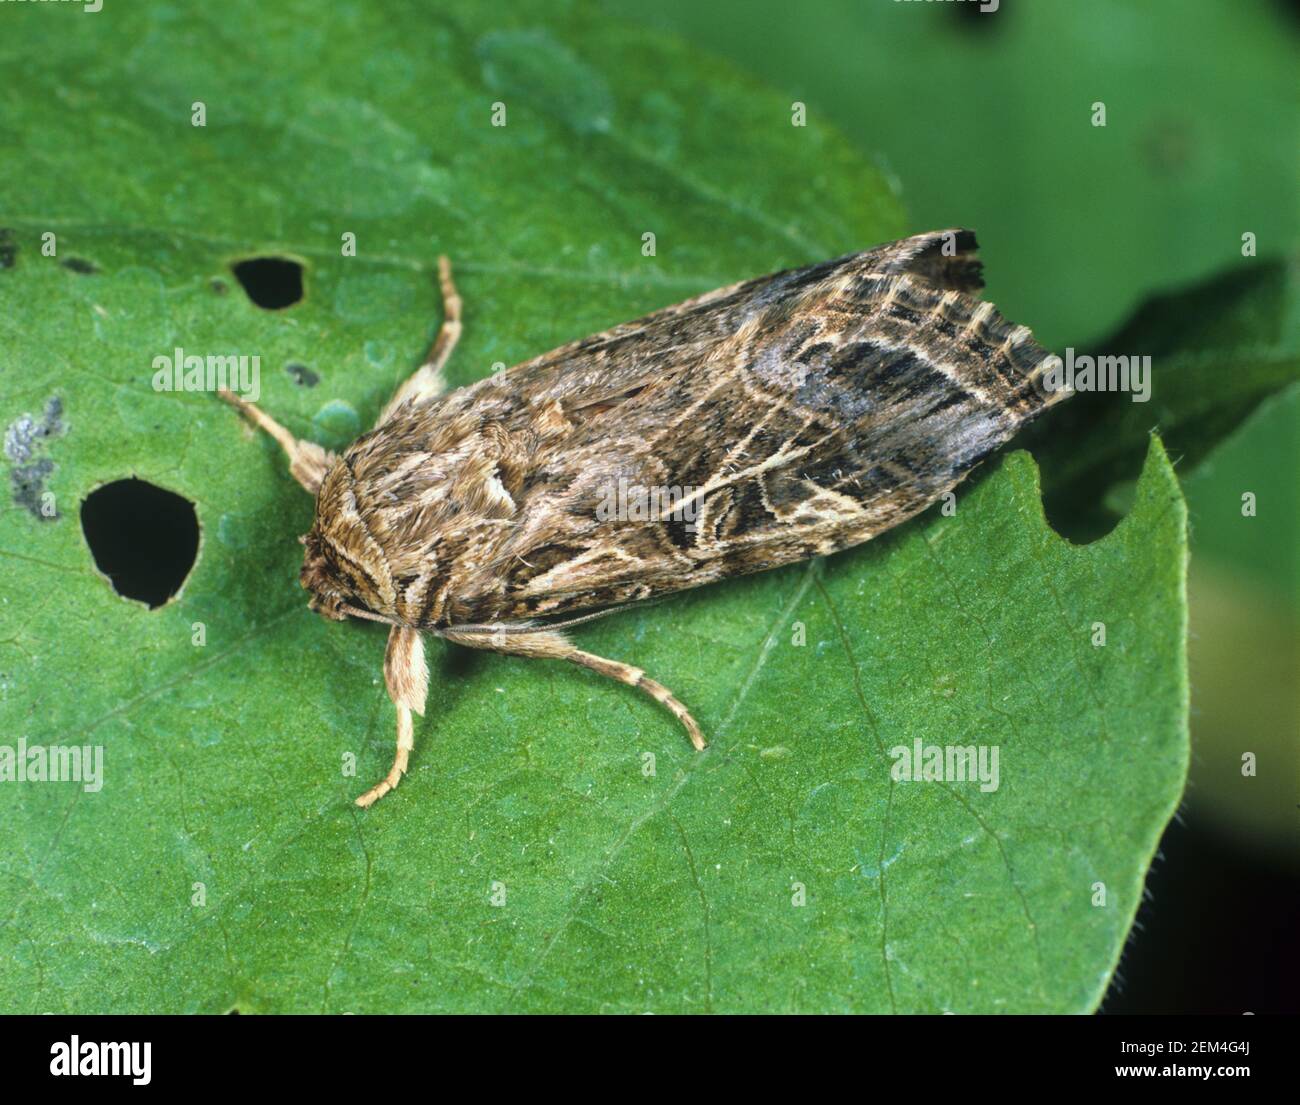 Ägyptischer oder afrikanischer Baumwollblattwurm oder mediterraner Brokat (Spodoptera littoralis) Weibliche Motte in Ruhe auf einem Baumwollblatt Stockfoto